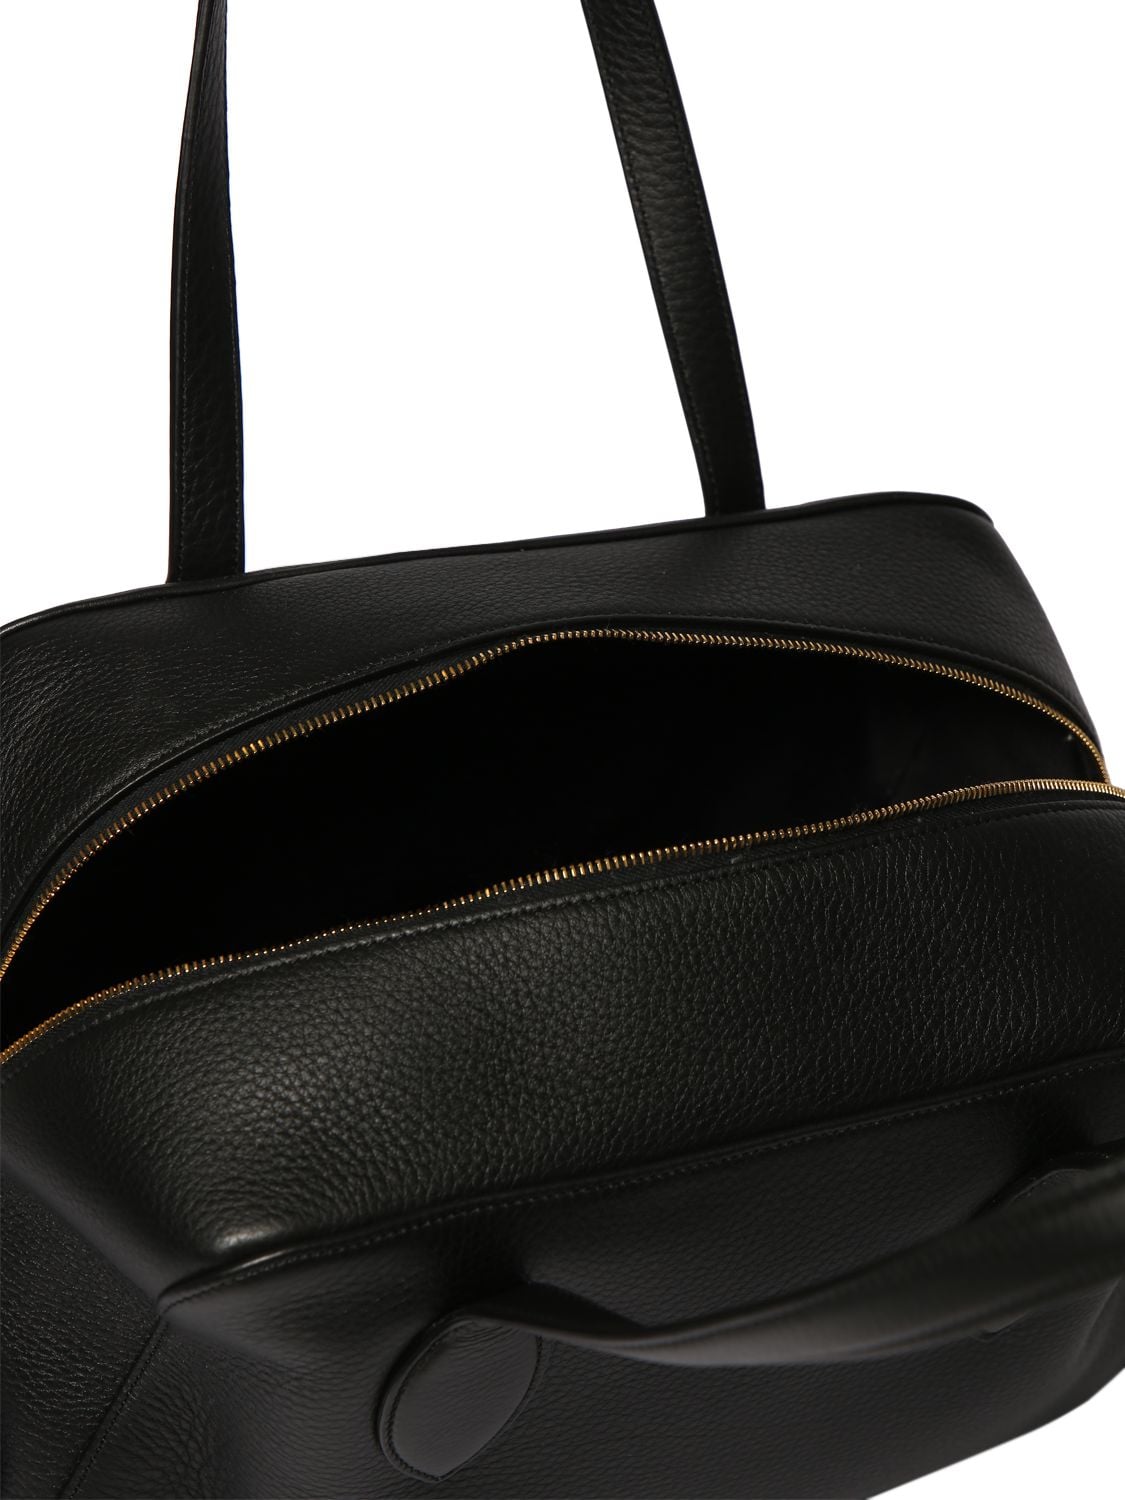 Shop Khaite Medium Maeve Leather Handbag In Black